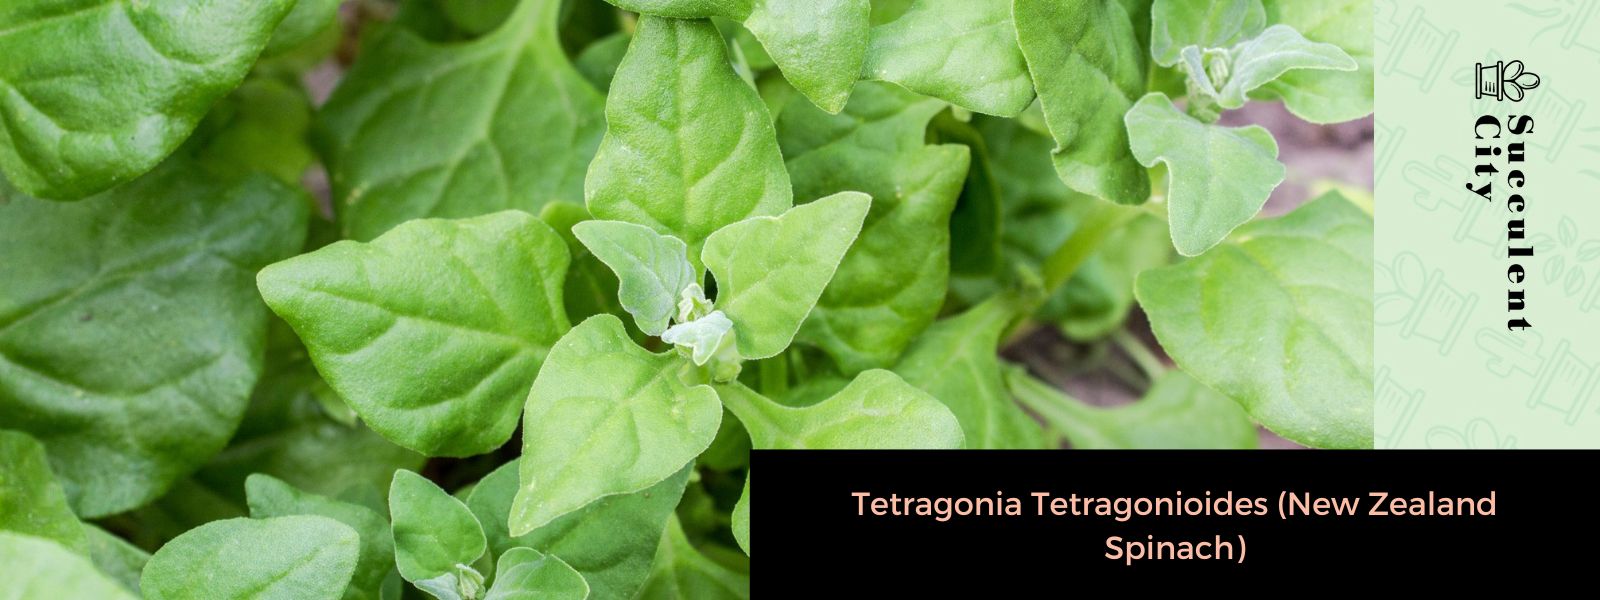 Tetragonia Tetragonioides (espinacas de Nueva Zelanda)